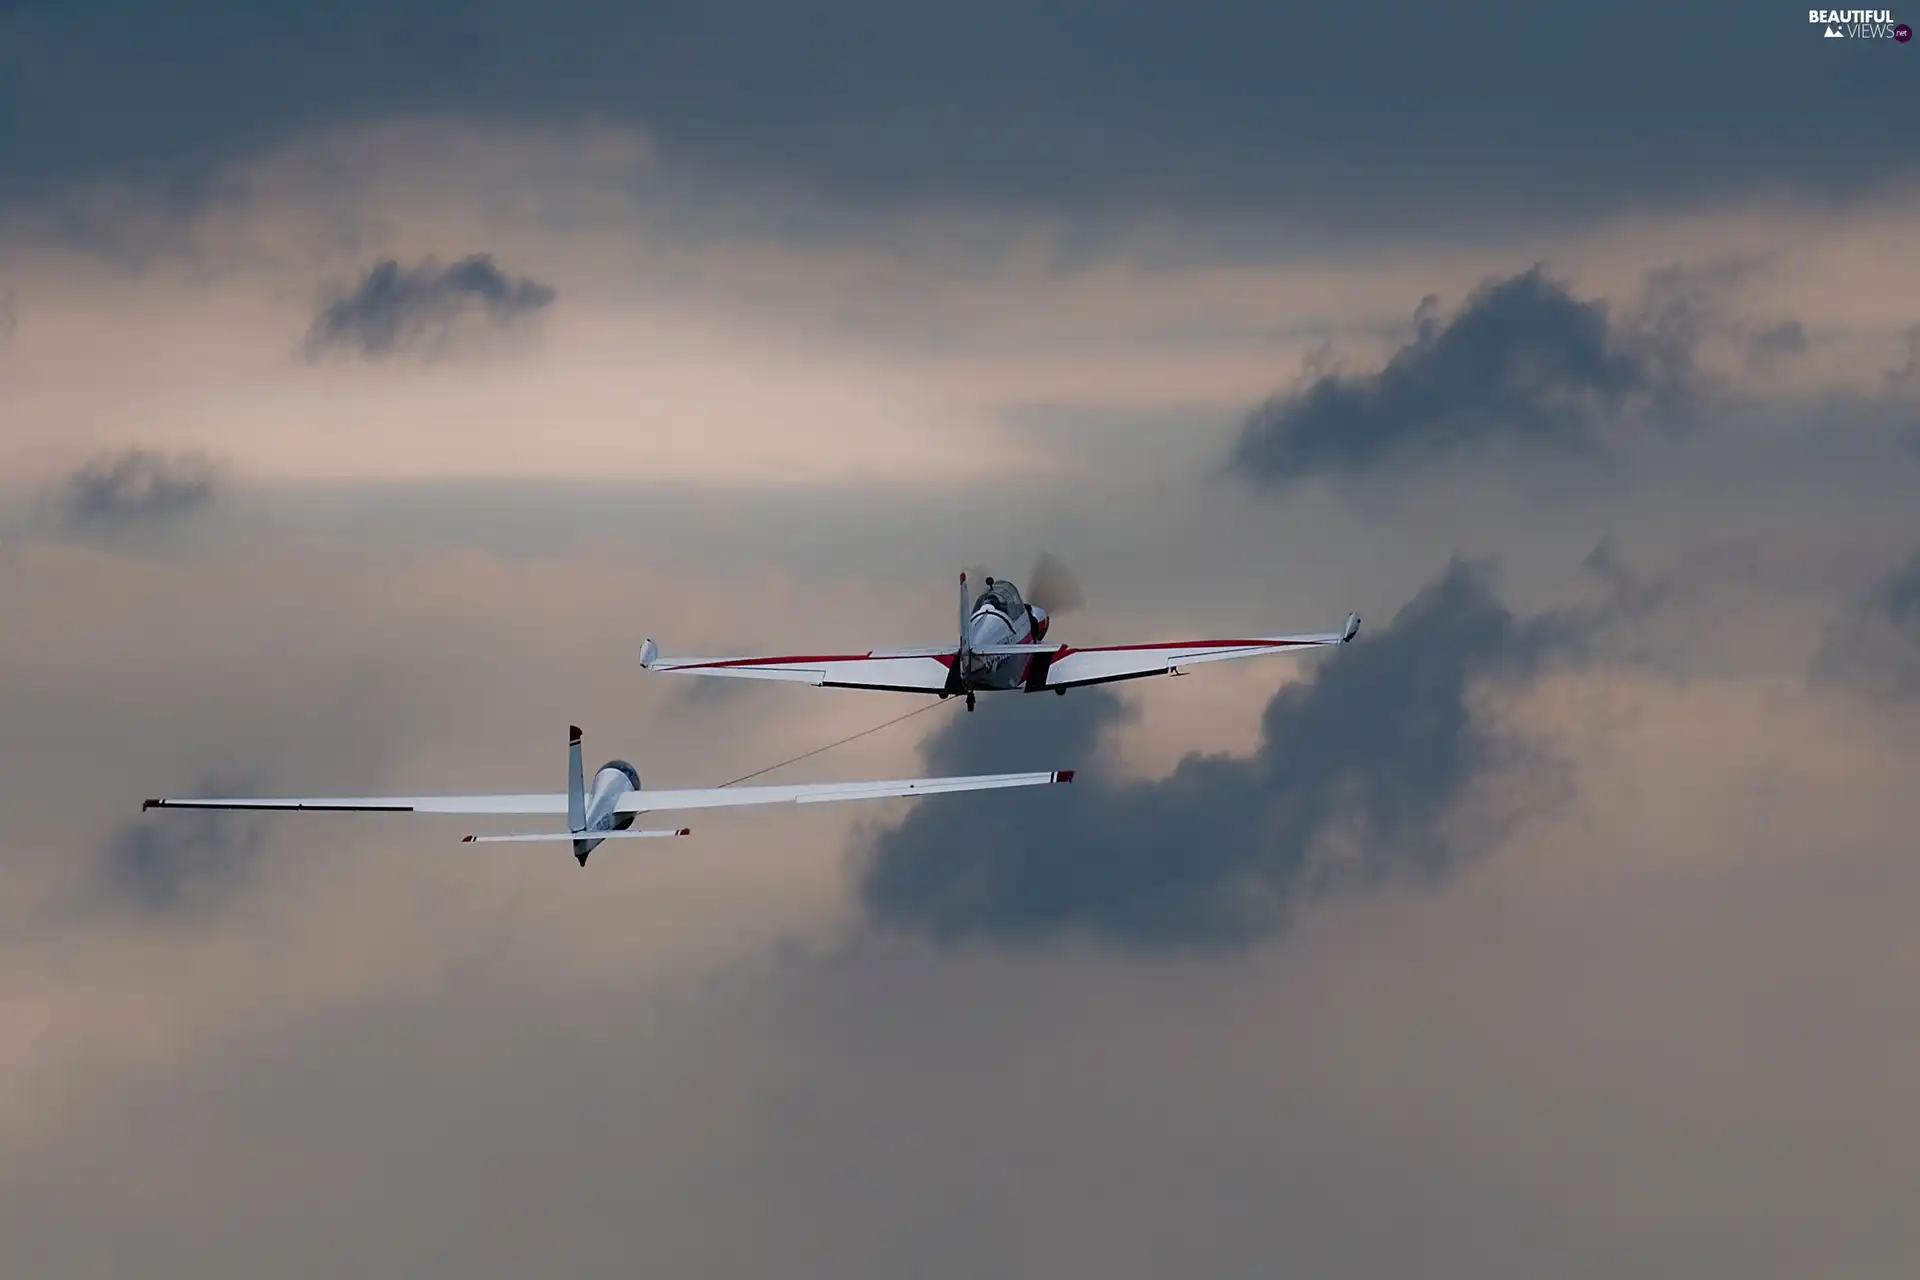 clouds, plane, glider